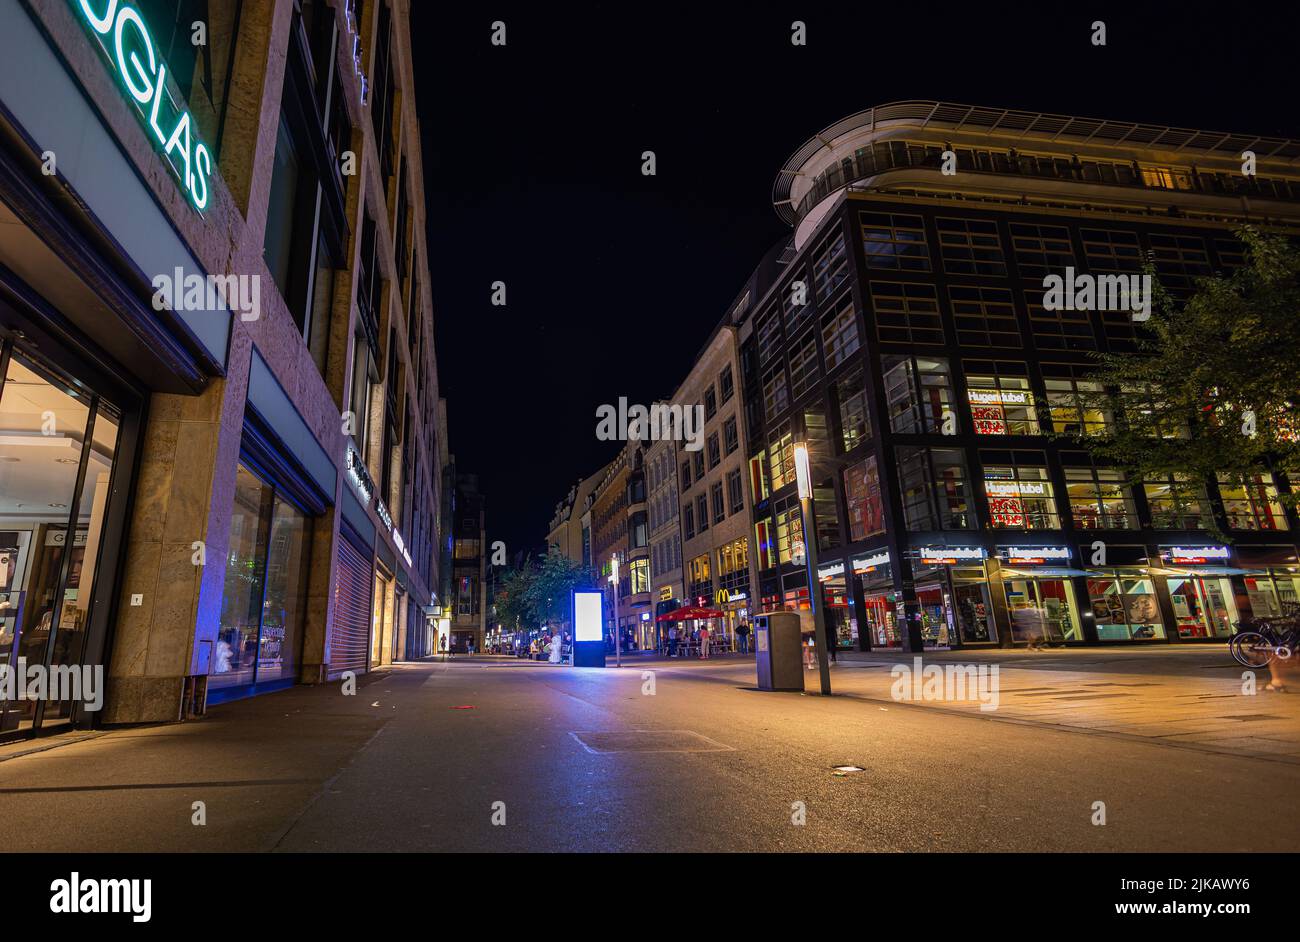 Leipzig, Deutschland - 02. Juli 2022: Die Peterstraße bei Nacht. Keine Leute mehr auf der Straße. Gebäude noch durch Licht beleuchtet, aber die Straße, die Stockfoto